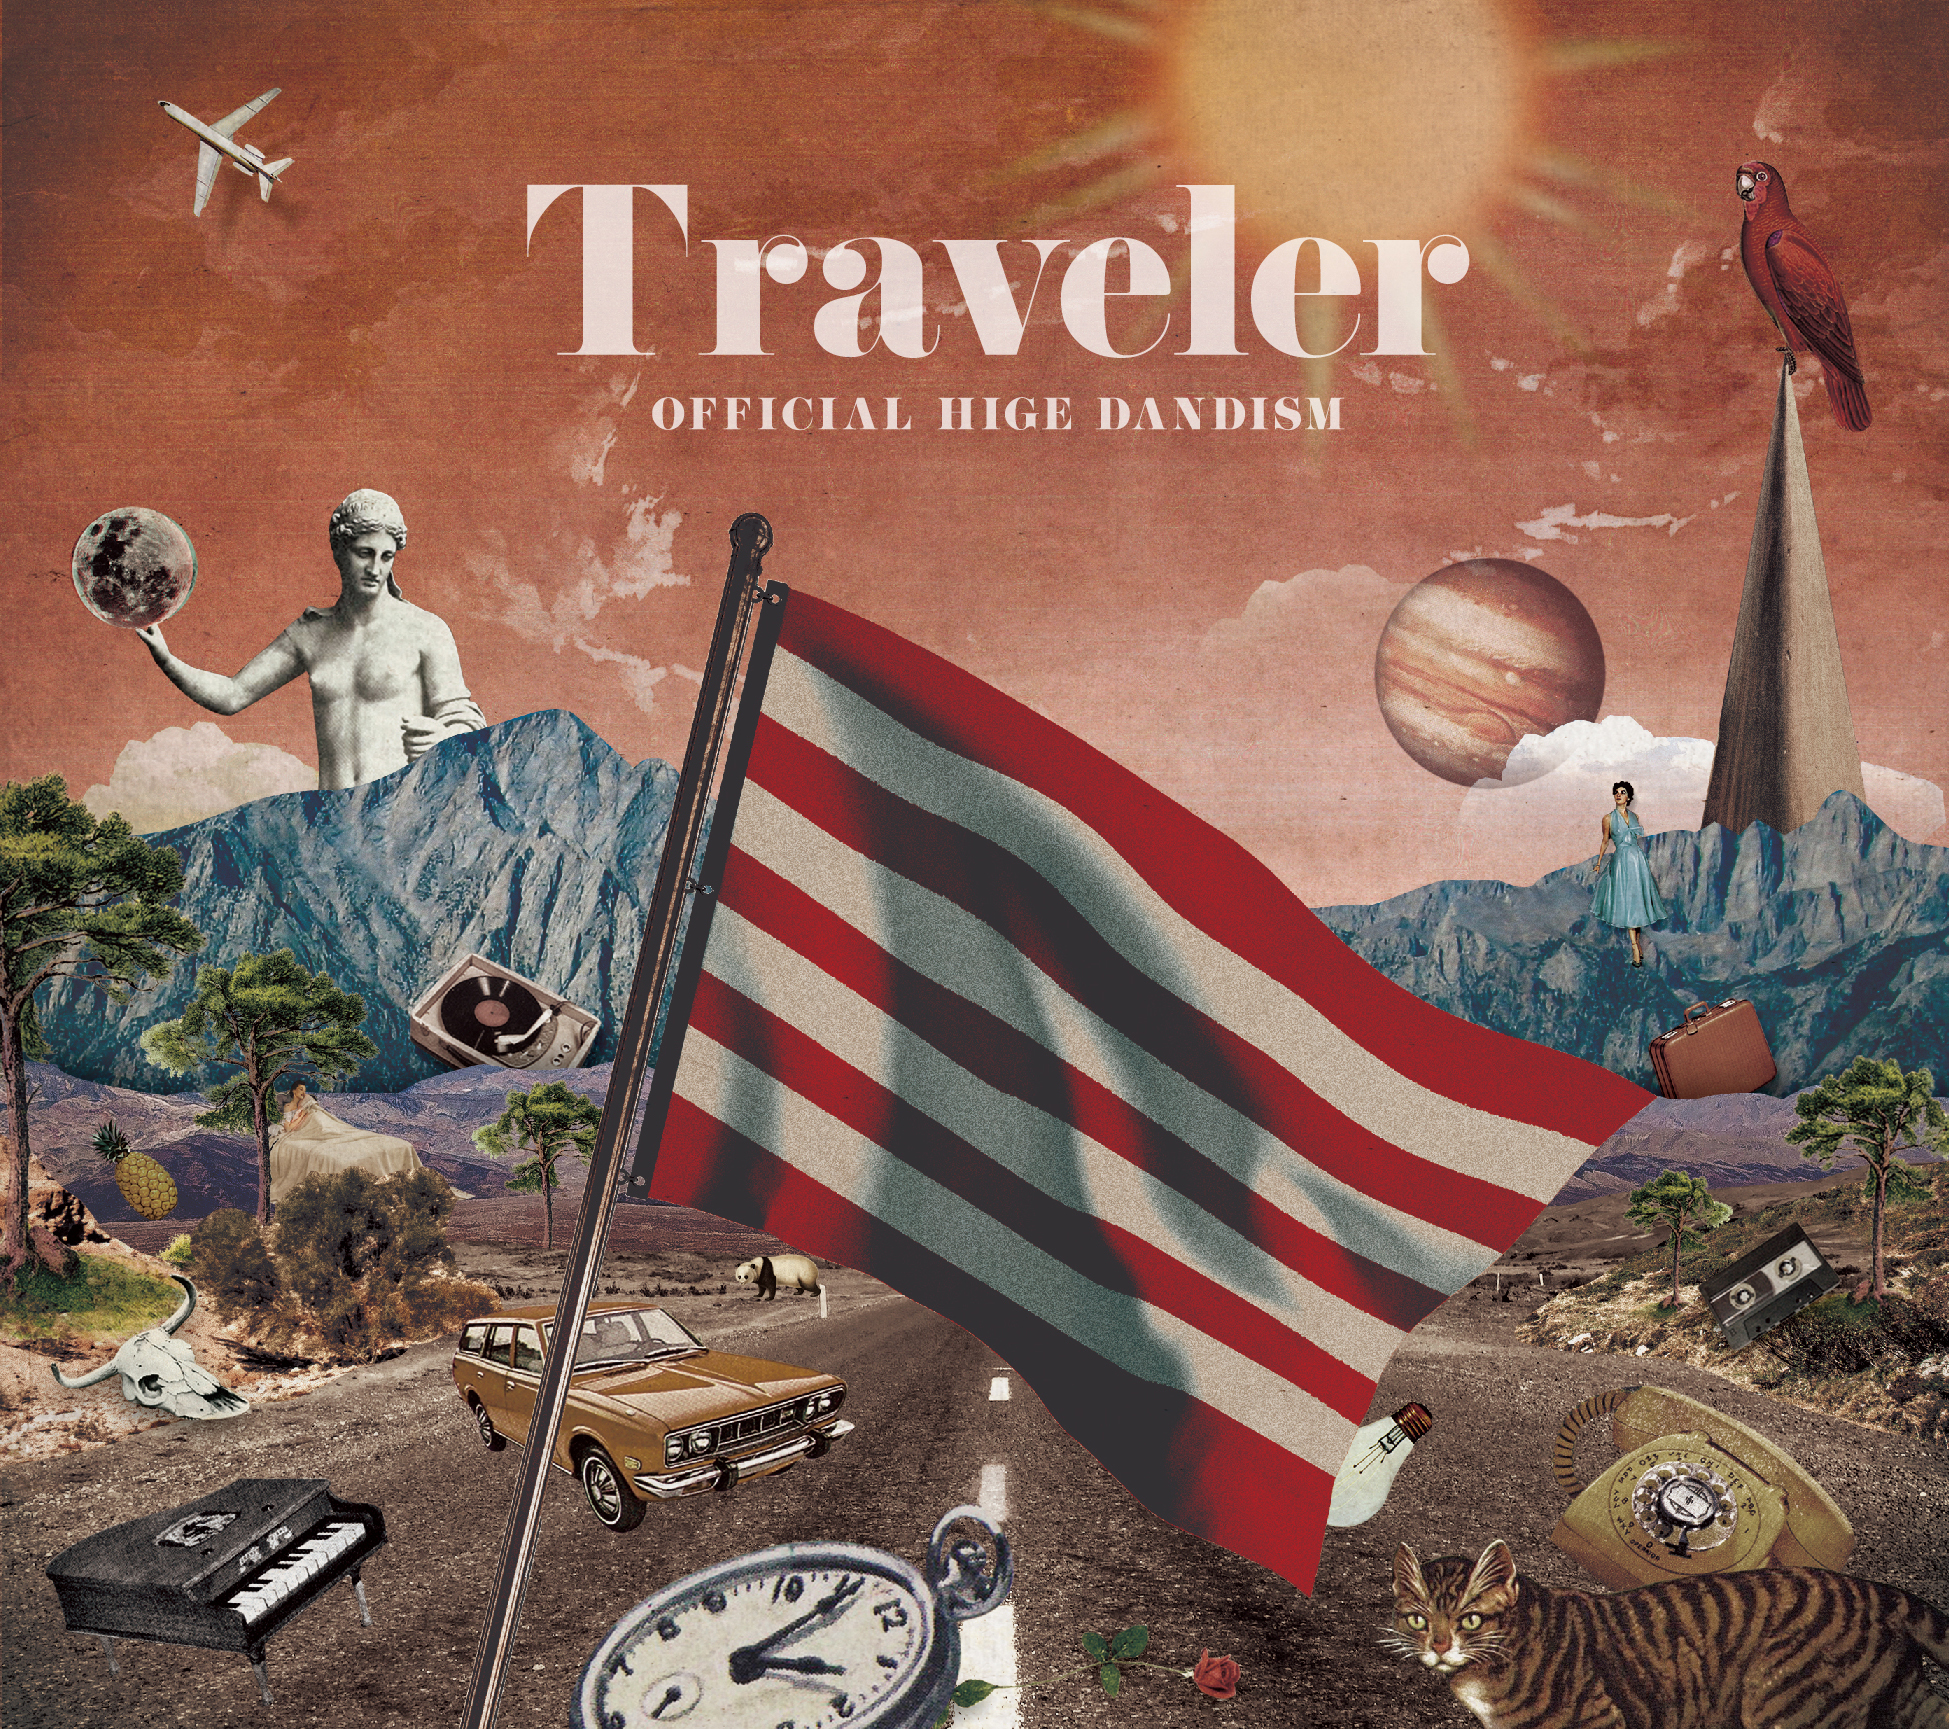 OFFICIAL HIGE DANDISM "Traveler" (CD+LIVE DVD)